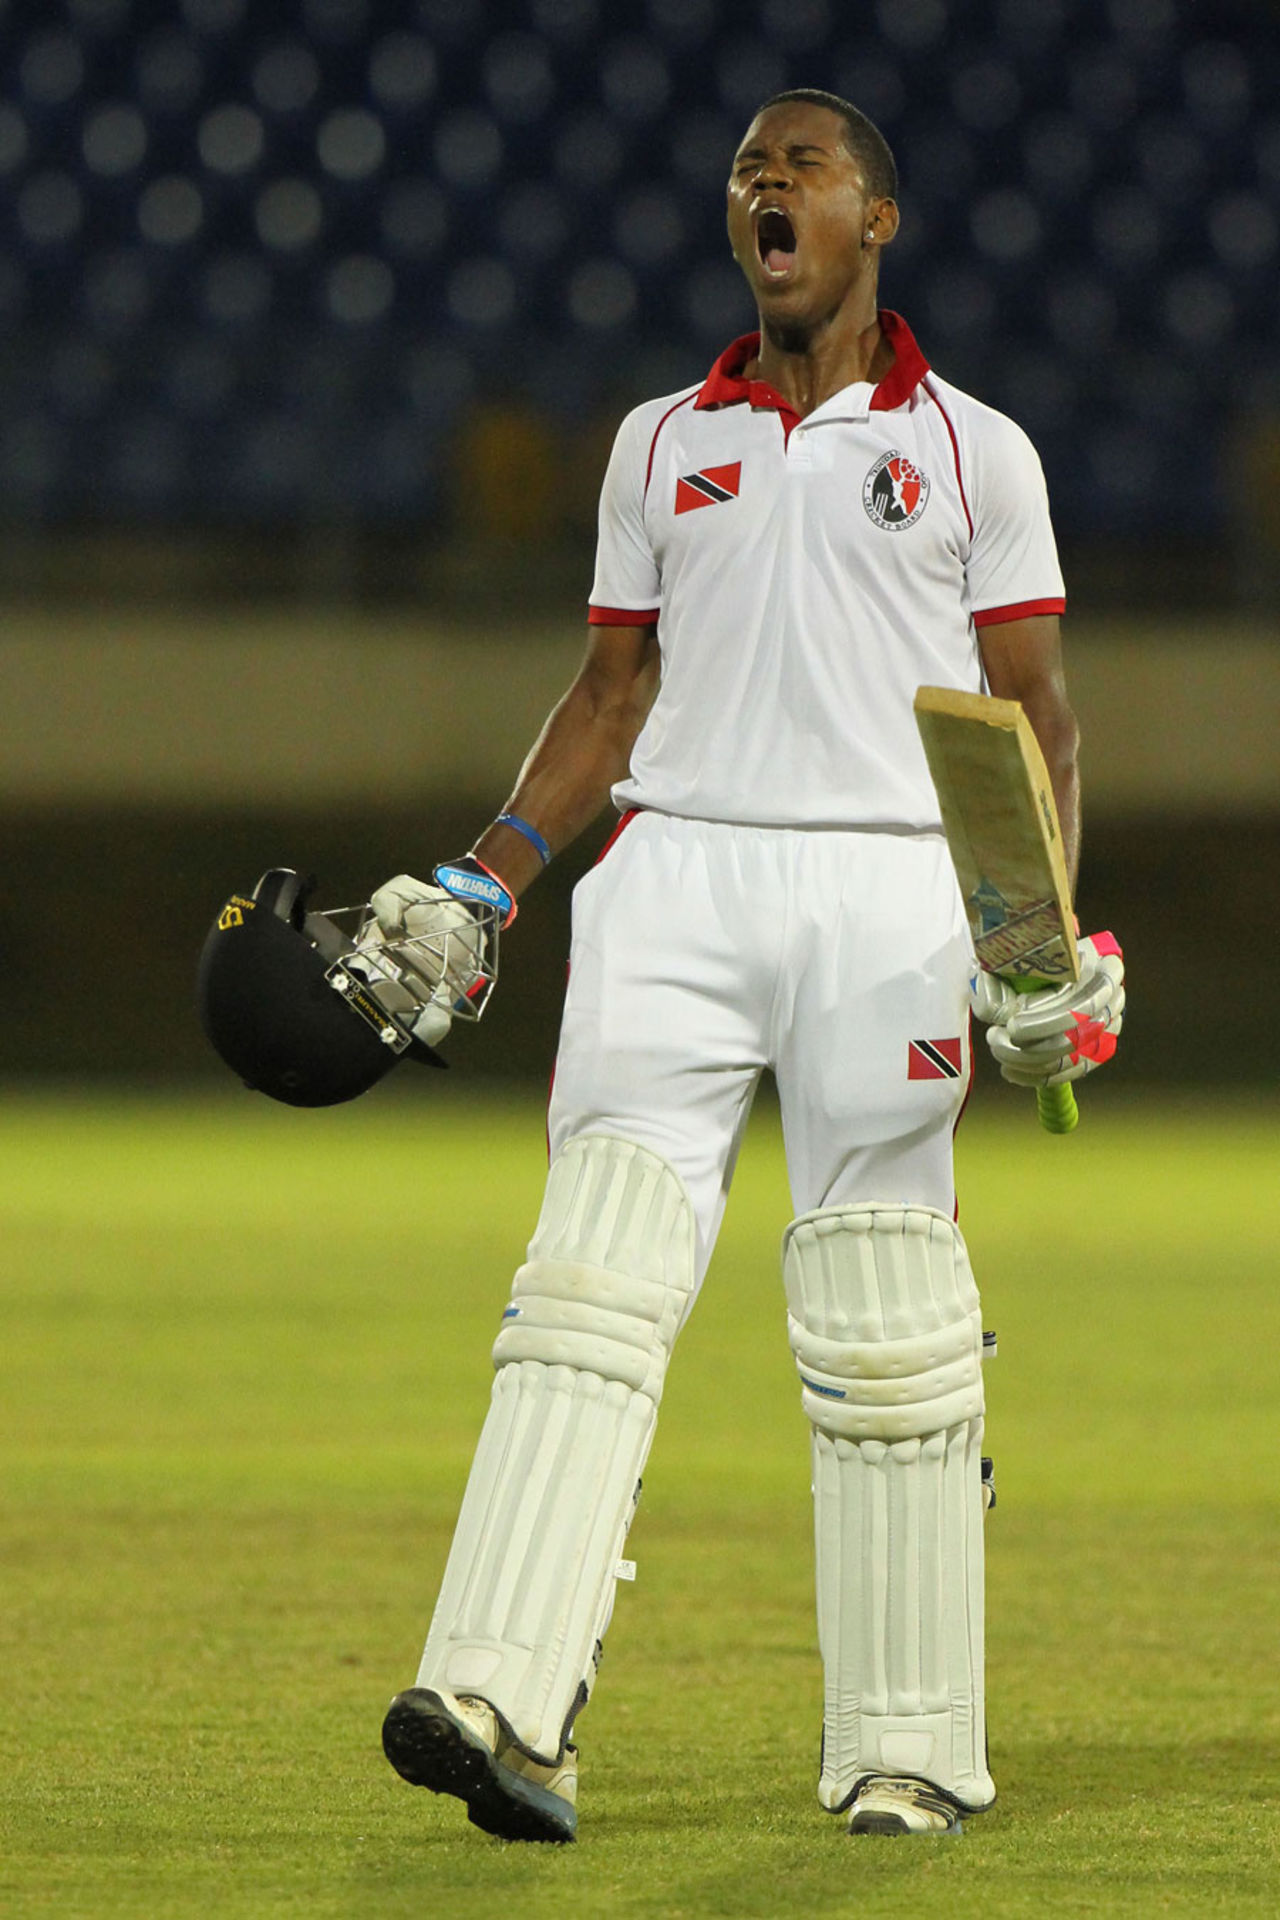 Akeal Hosein celebrates his century, Trinidad & Tobago v Leeward Islands, Trinidad, 2nd day, March 15, 2014